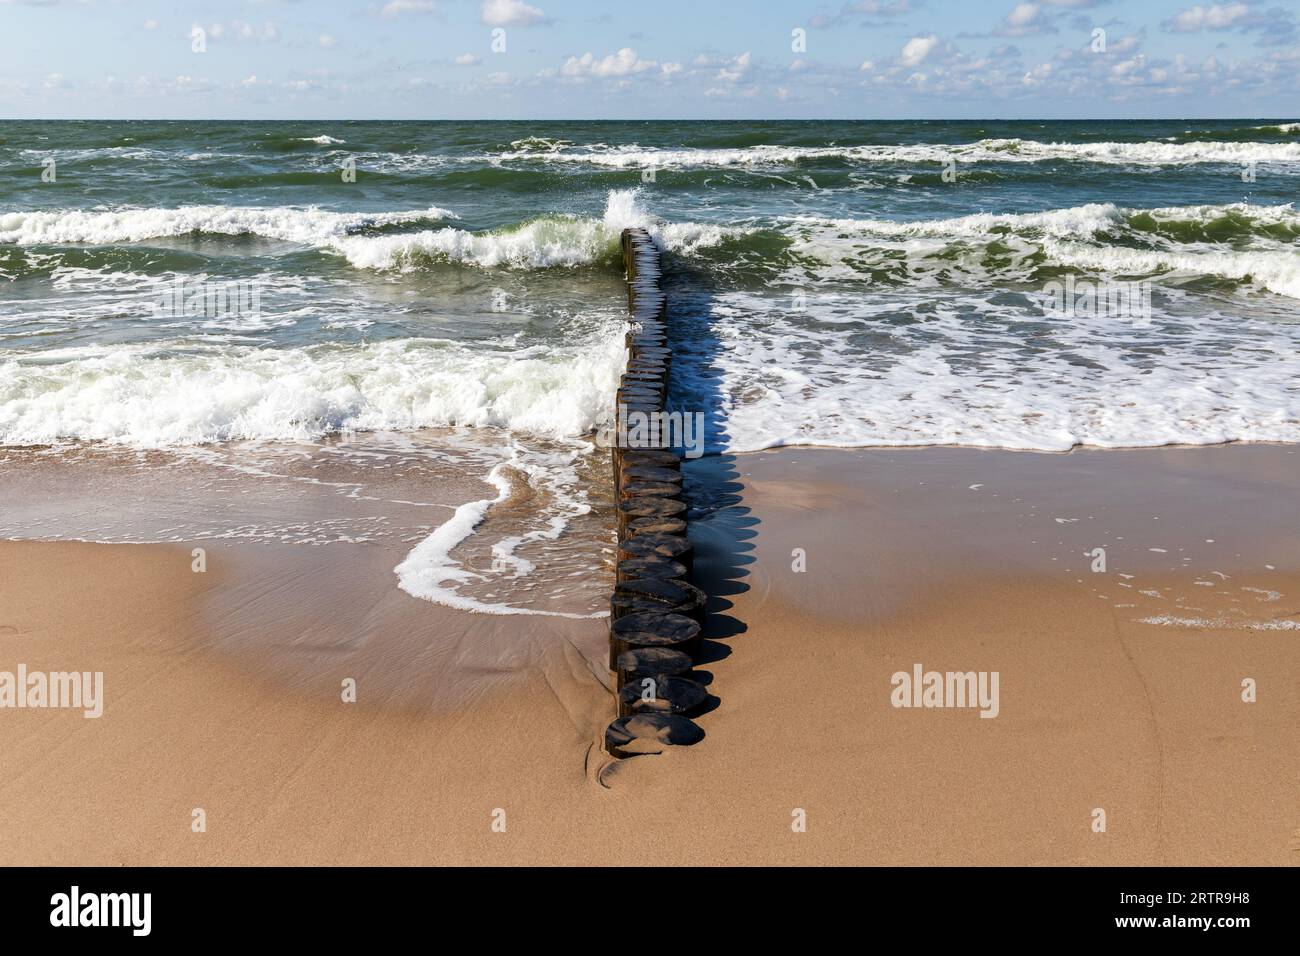 Spiaggia sabbiosa con acqua costiera e frangiflutti di legno montati sulla costa del Mar Baltico. Foto del paesaggio scattata in una soleggiata giornata estiva. Zelenogradsk, Kaliningrad Foto Stock